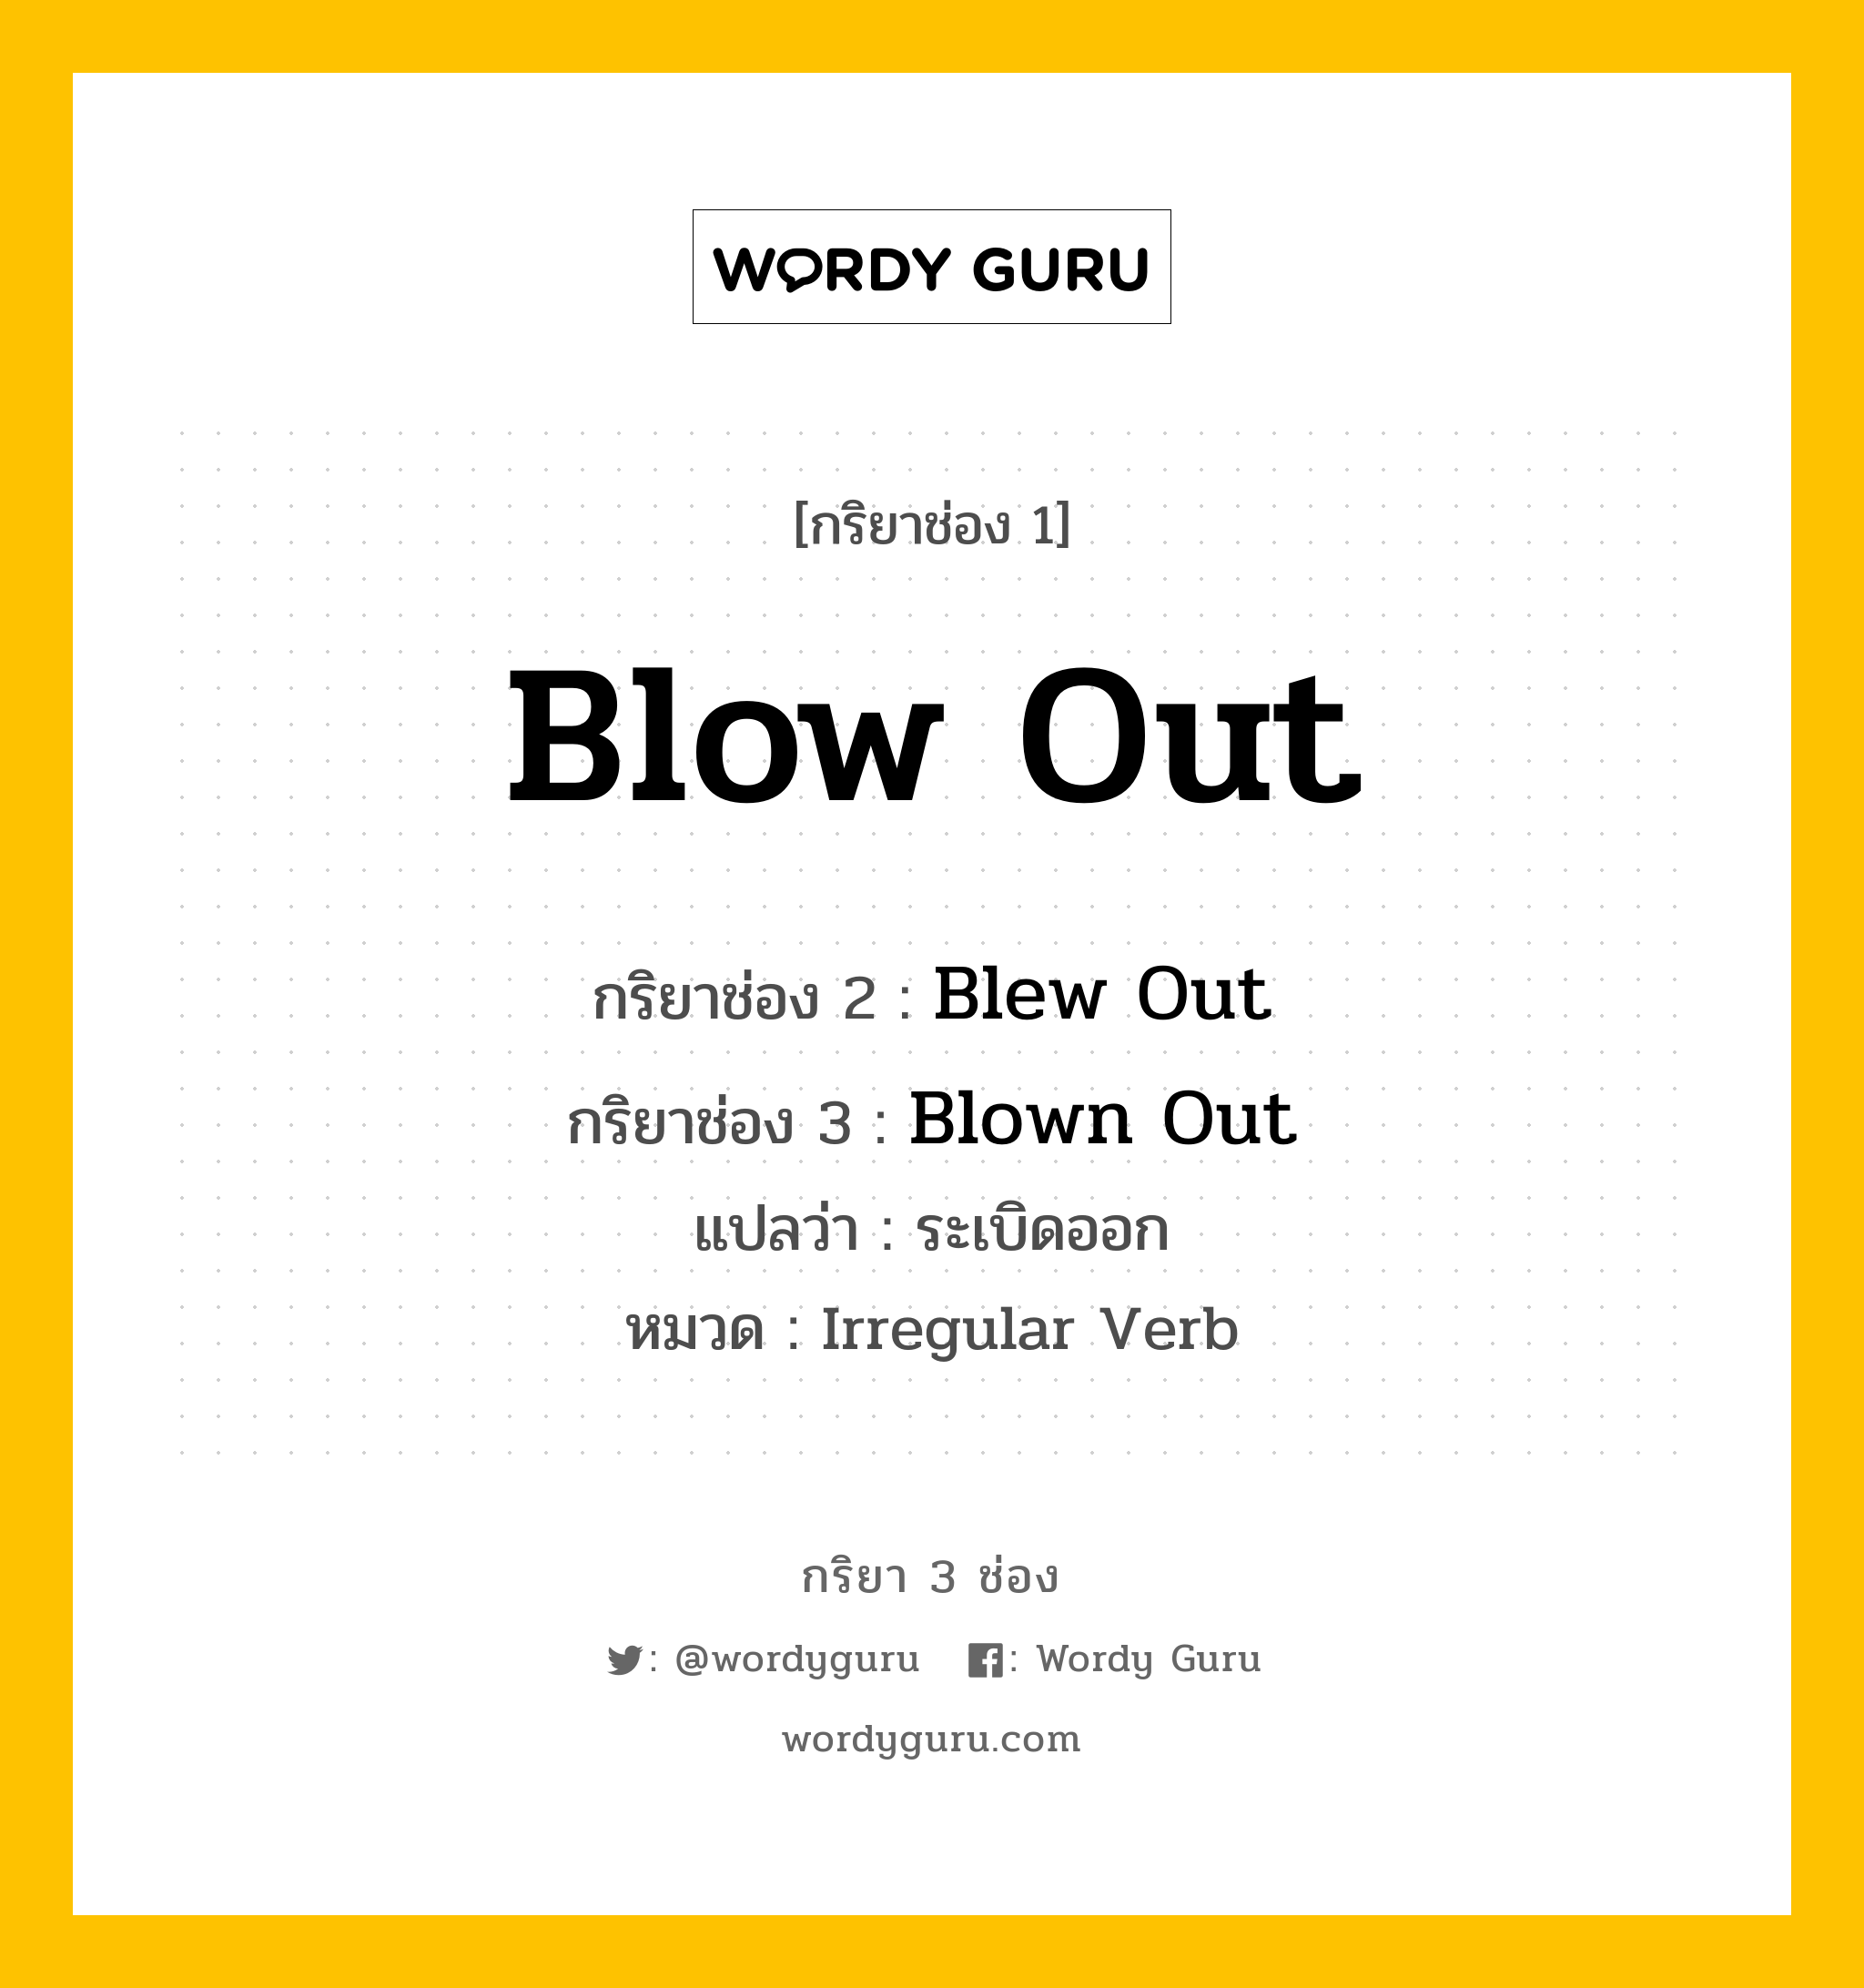 Blow Out มีกริยา 3 ช่องอะไรบ้าง? คำศัพท์ในกลุ่มประเภท Irregular Verb, กริยาช่อง 1 Blow Out กริยาช่อง 2 Blew Out กริยาช่อง 3 Blown Out แปลว่า ระเบิดออก หมวด Irregular Verb หมวด Irregular Verb